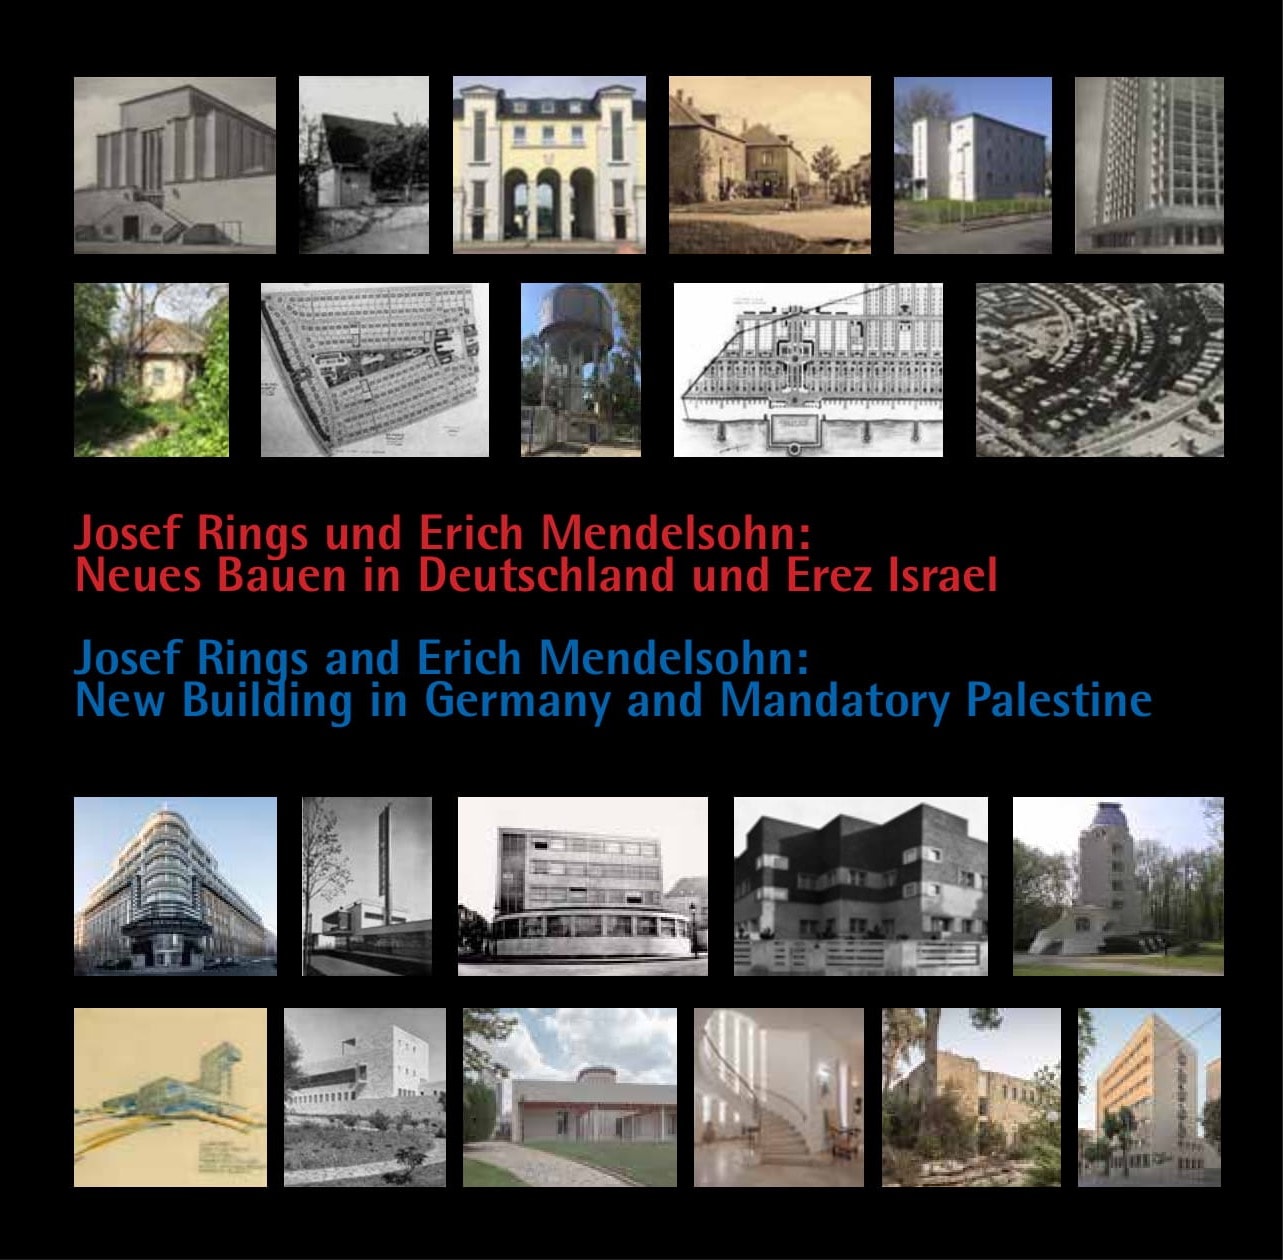 Josef Rings und Erich Mendelsohn: Neues Bauen in Deutschland und Erez Israel